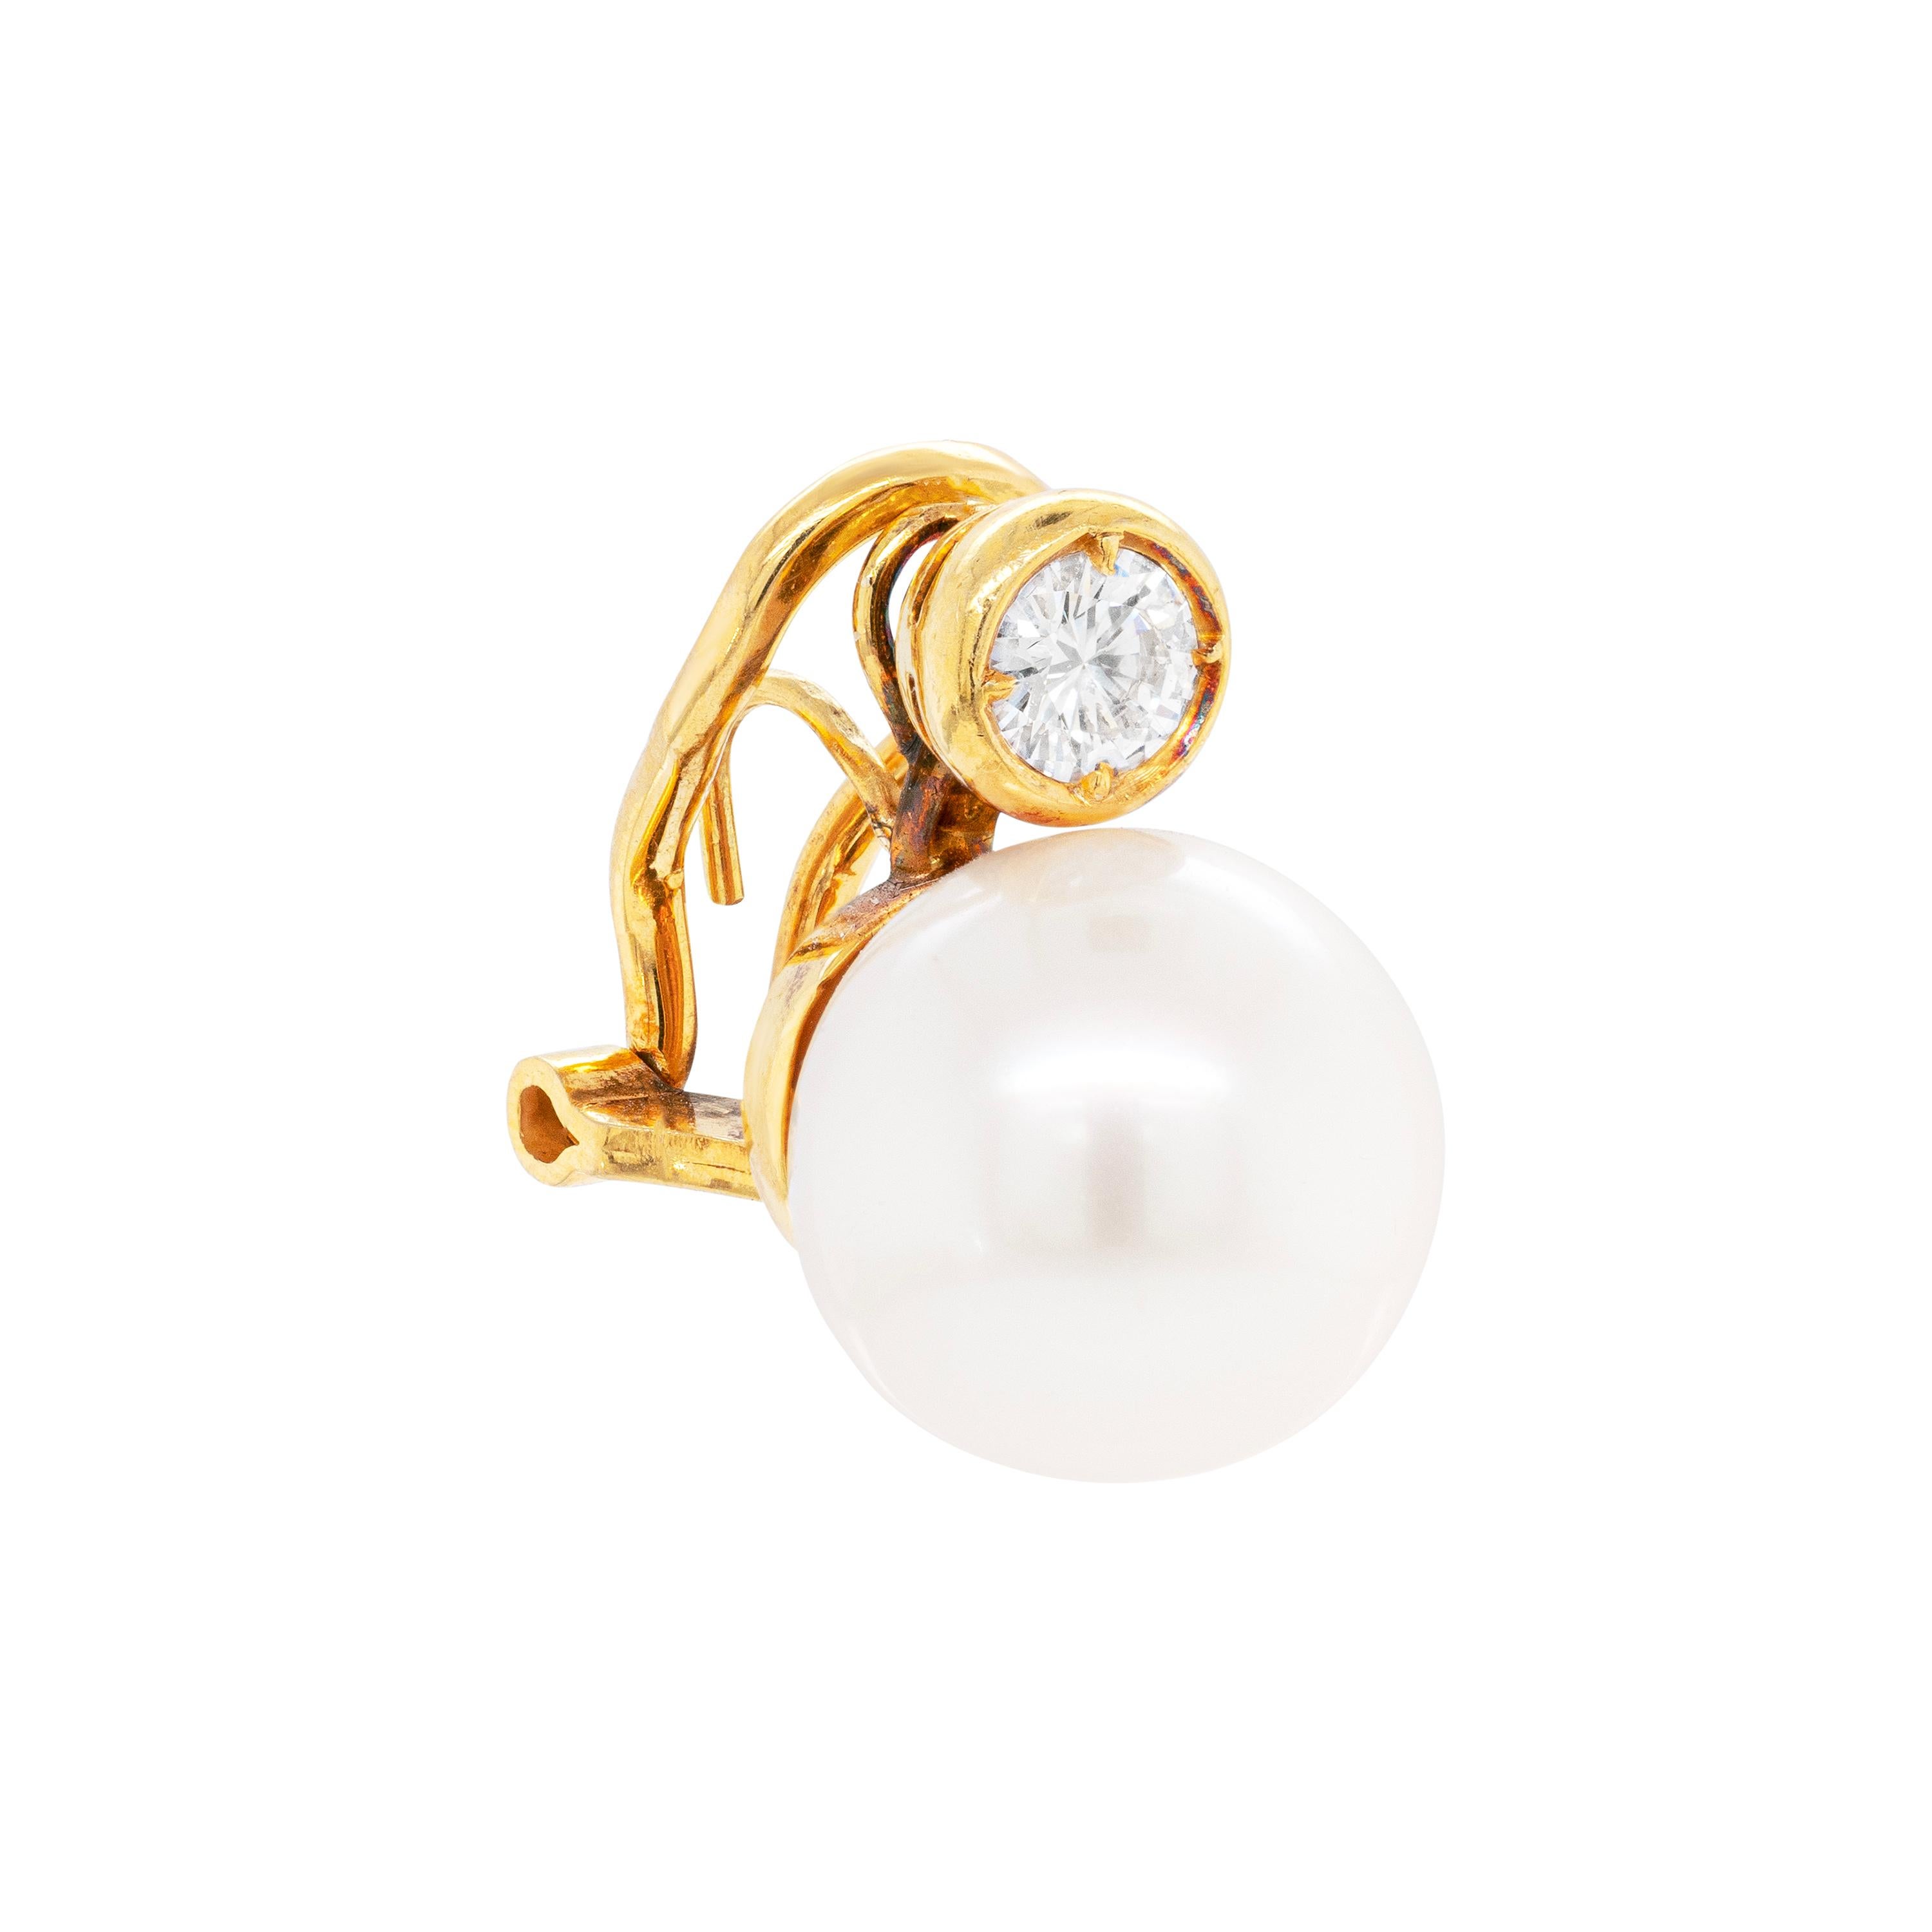 Wunderschöne, elegante Ohrringe mit einer weißen Südsee-Zuchtperle mit einem Durchmesser von ca. 11,5 mm, begleitet von einem Diamanten mit rundem Brillantschliff und einem Gewicht von ca. 0,30 ct in einer Fassung aus 18 ct Gold. Die Ohrringe sind